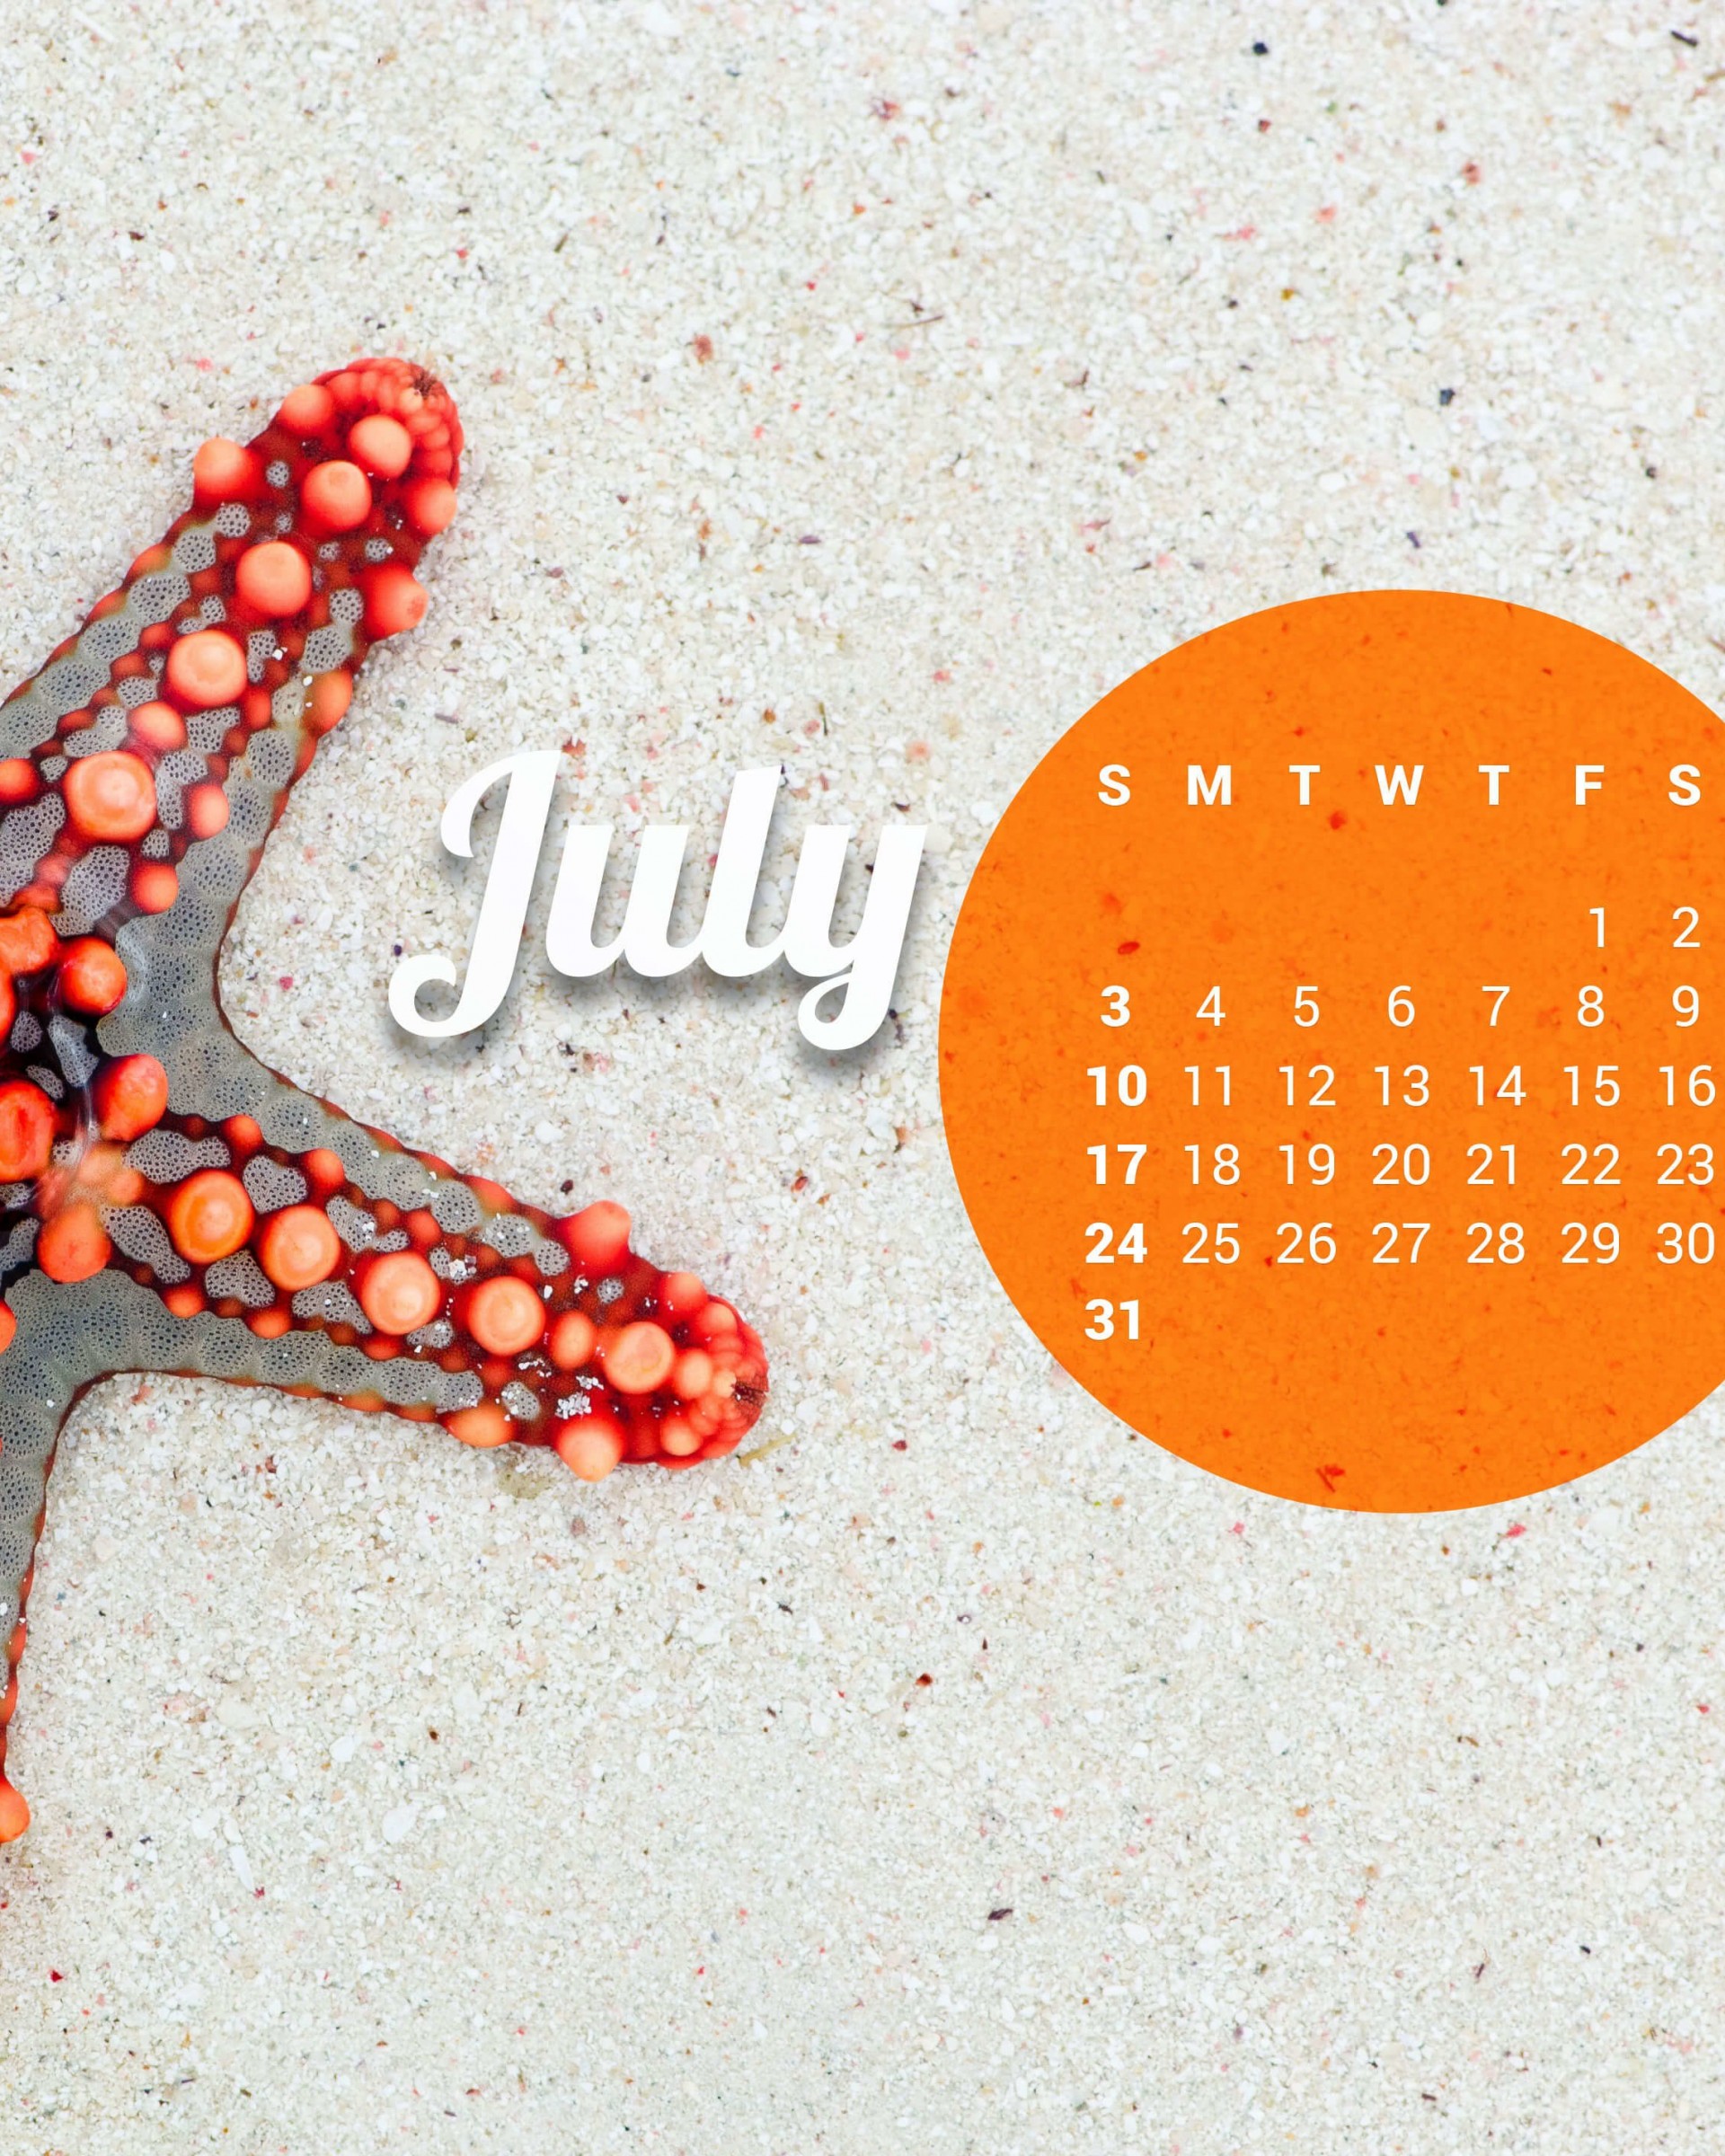 July 2016 Calendar Wallpaper for Google Nexus 7